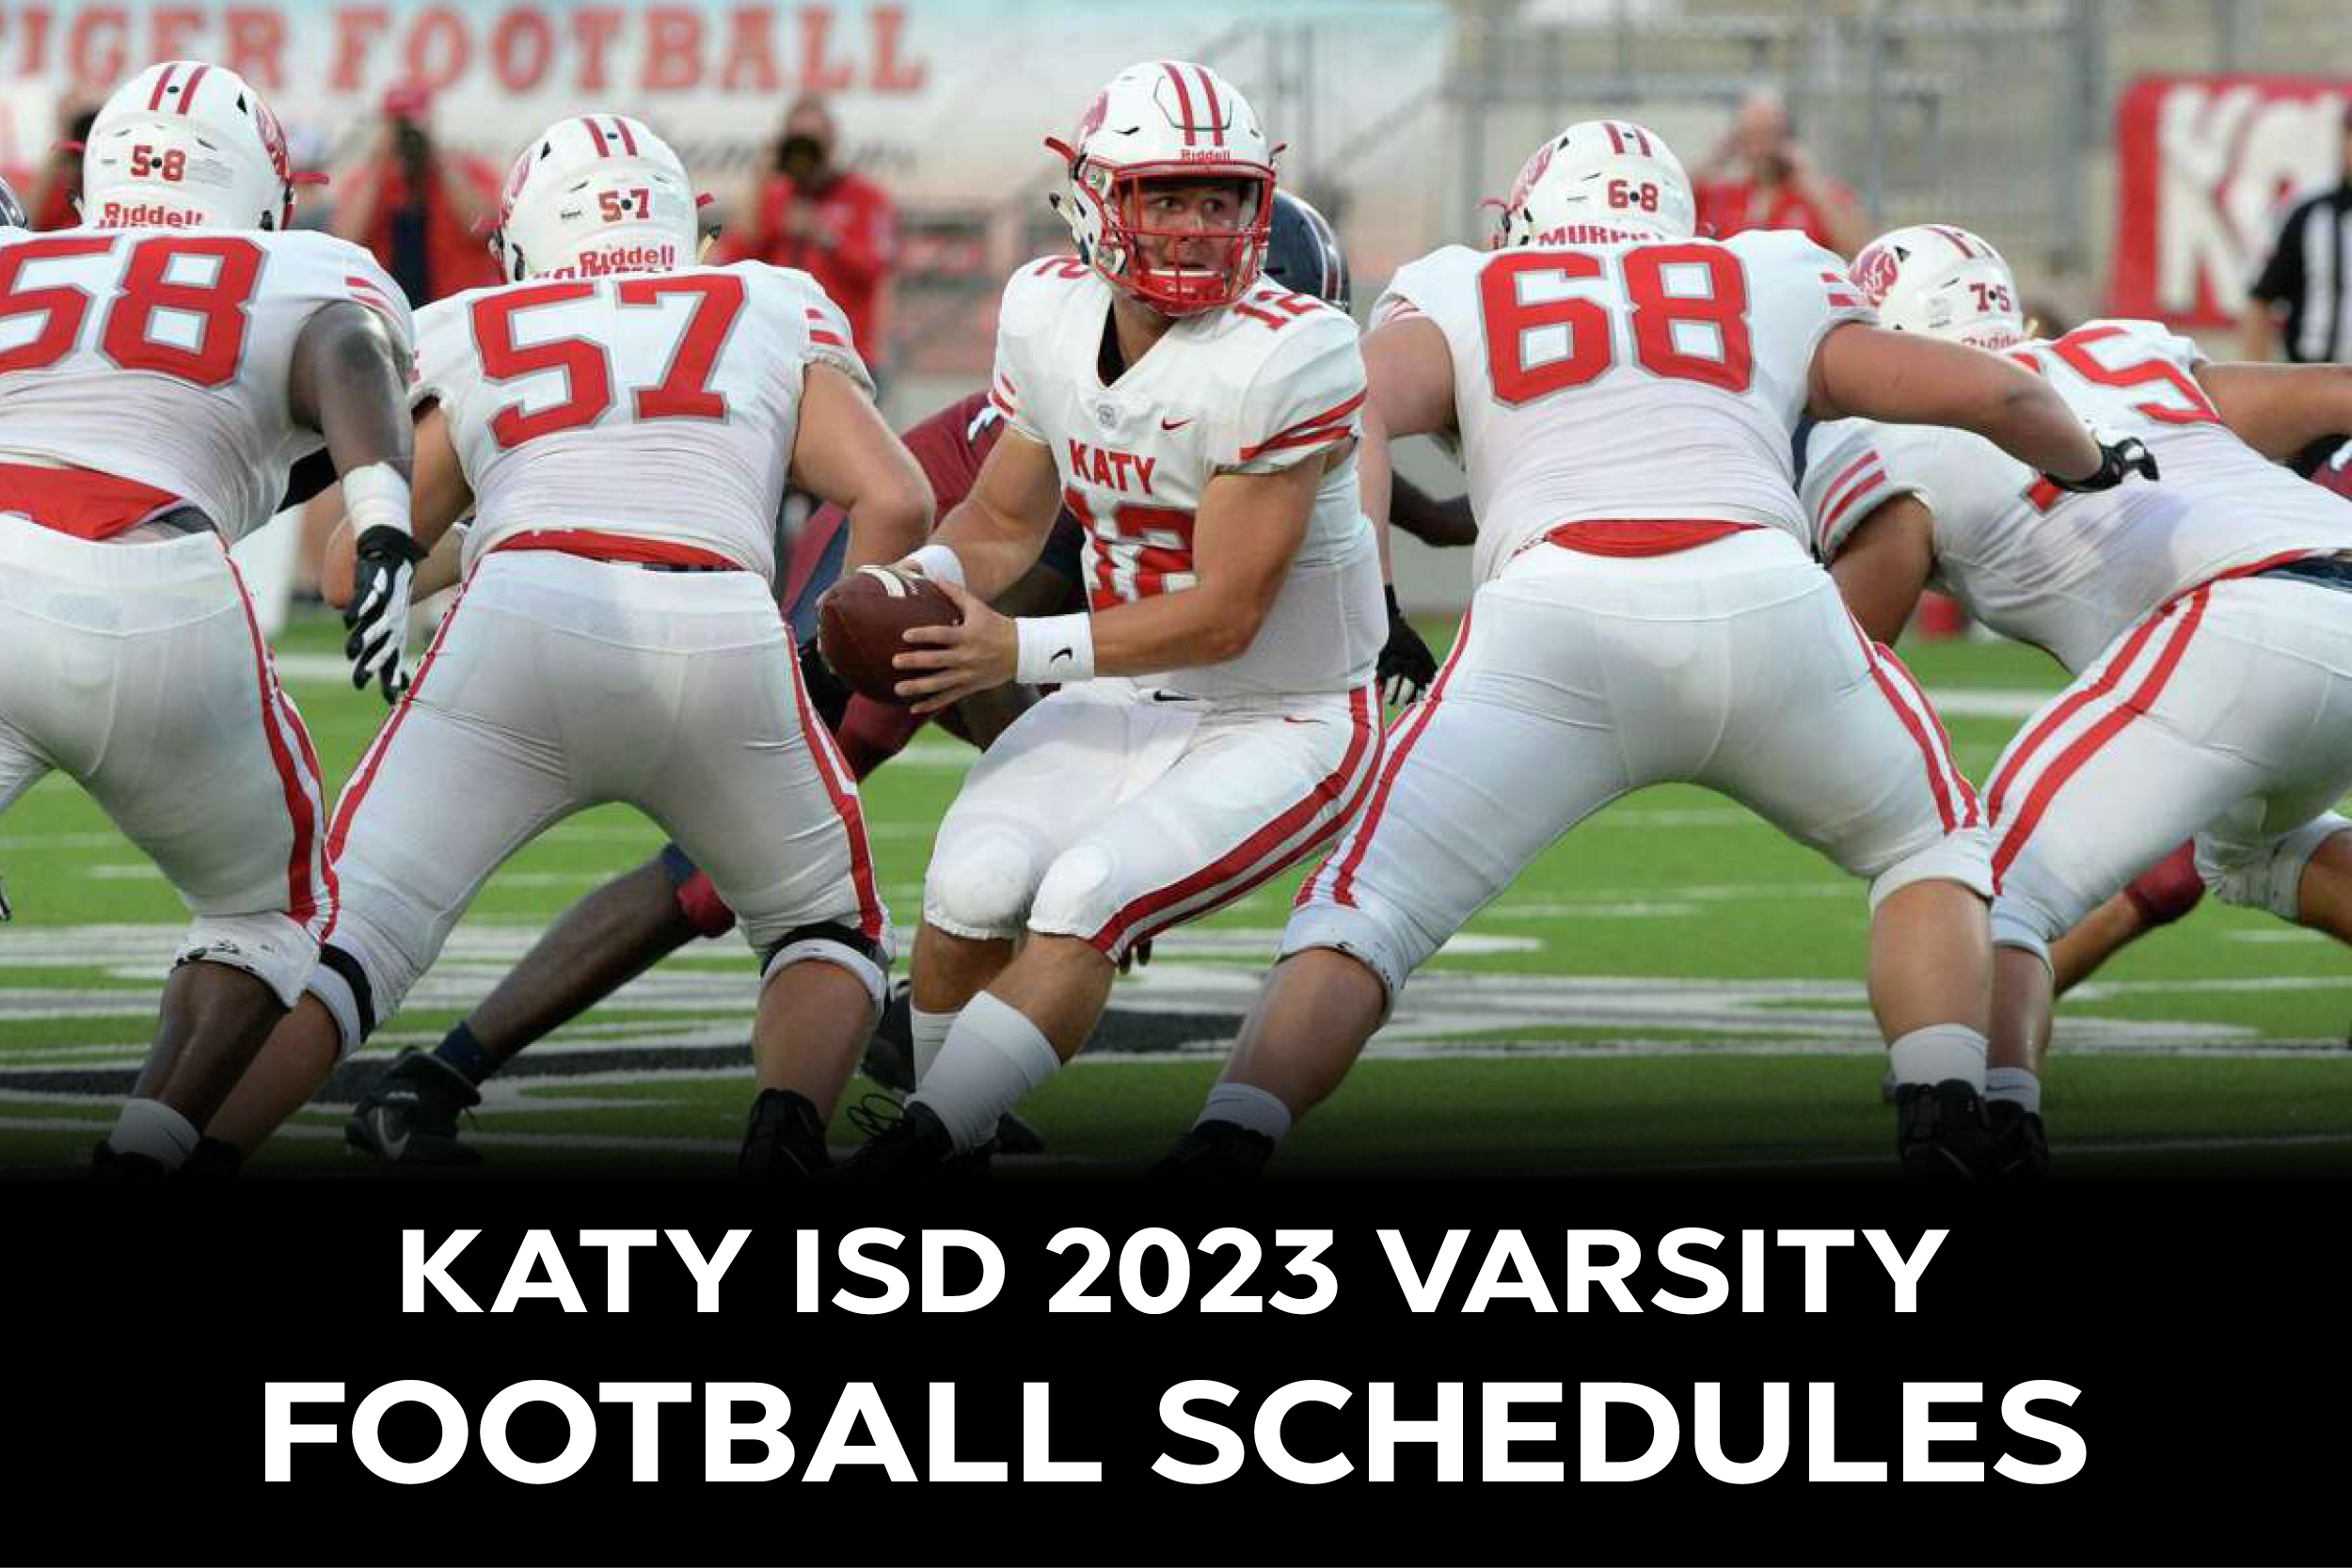 Katy ISD 2023 Varsity Football Schedule